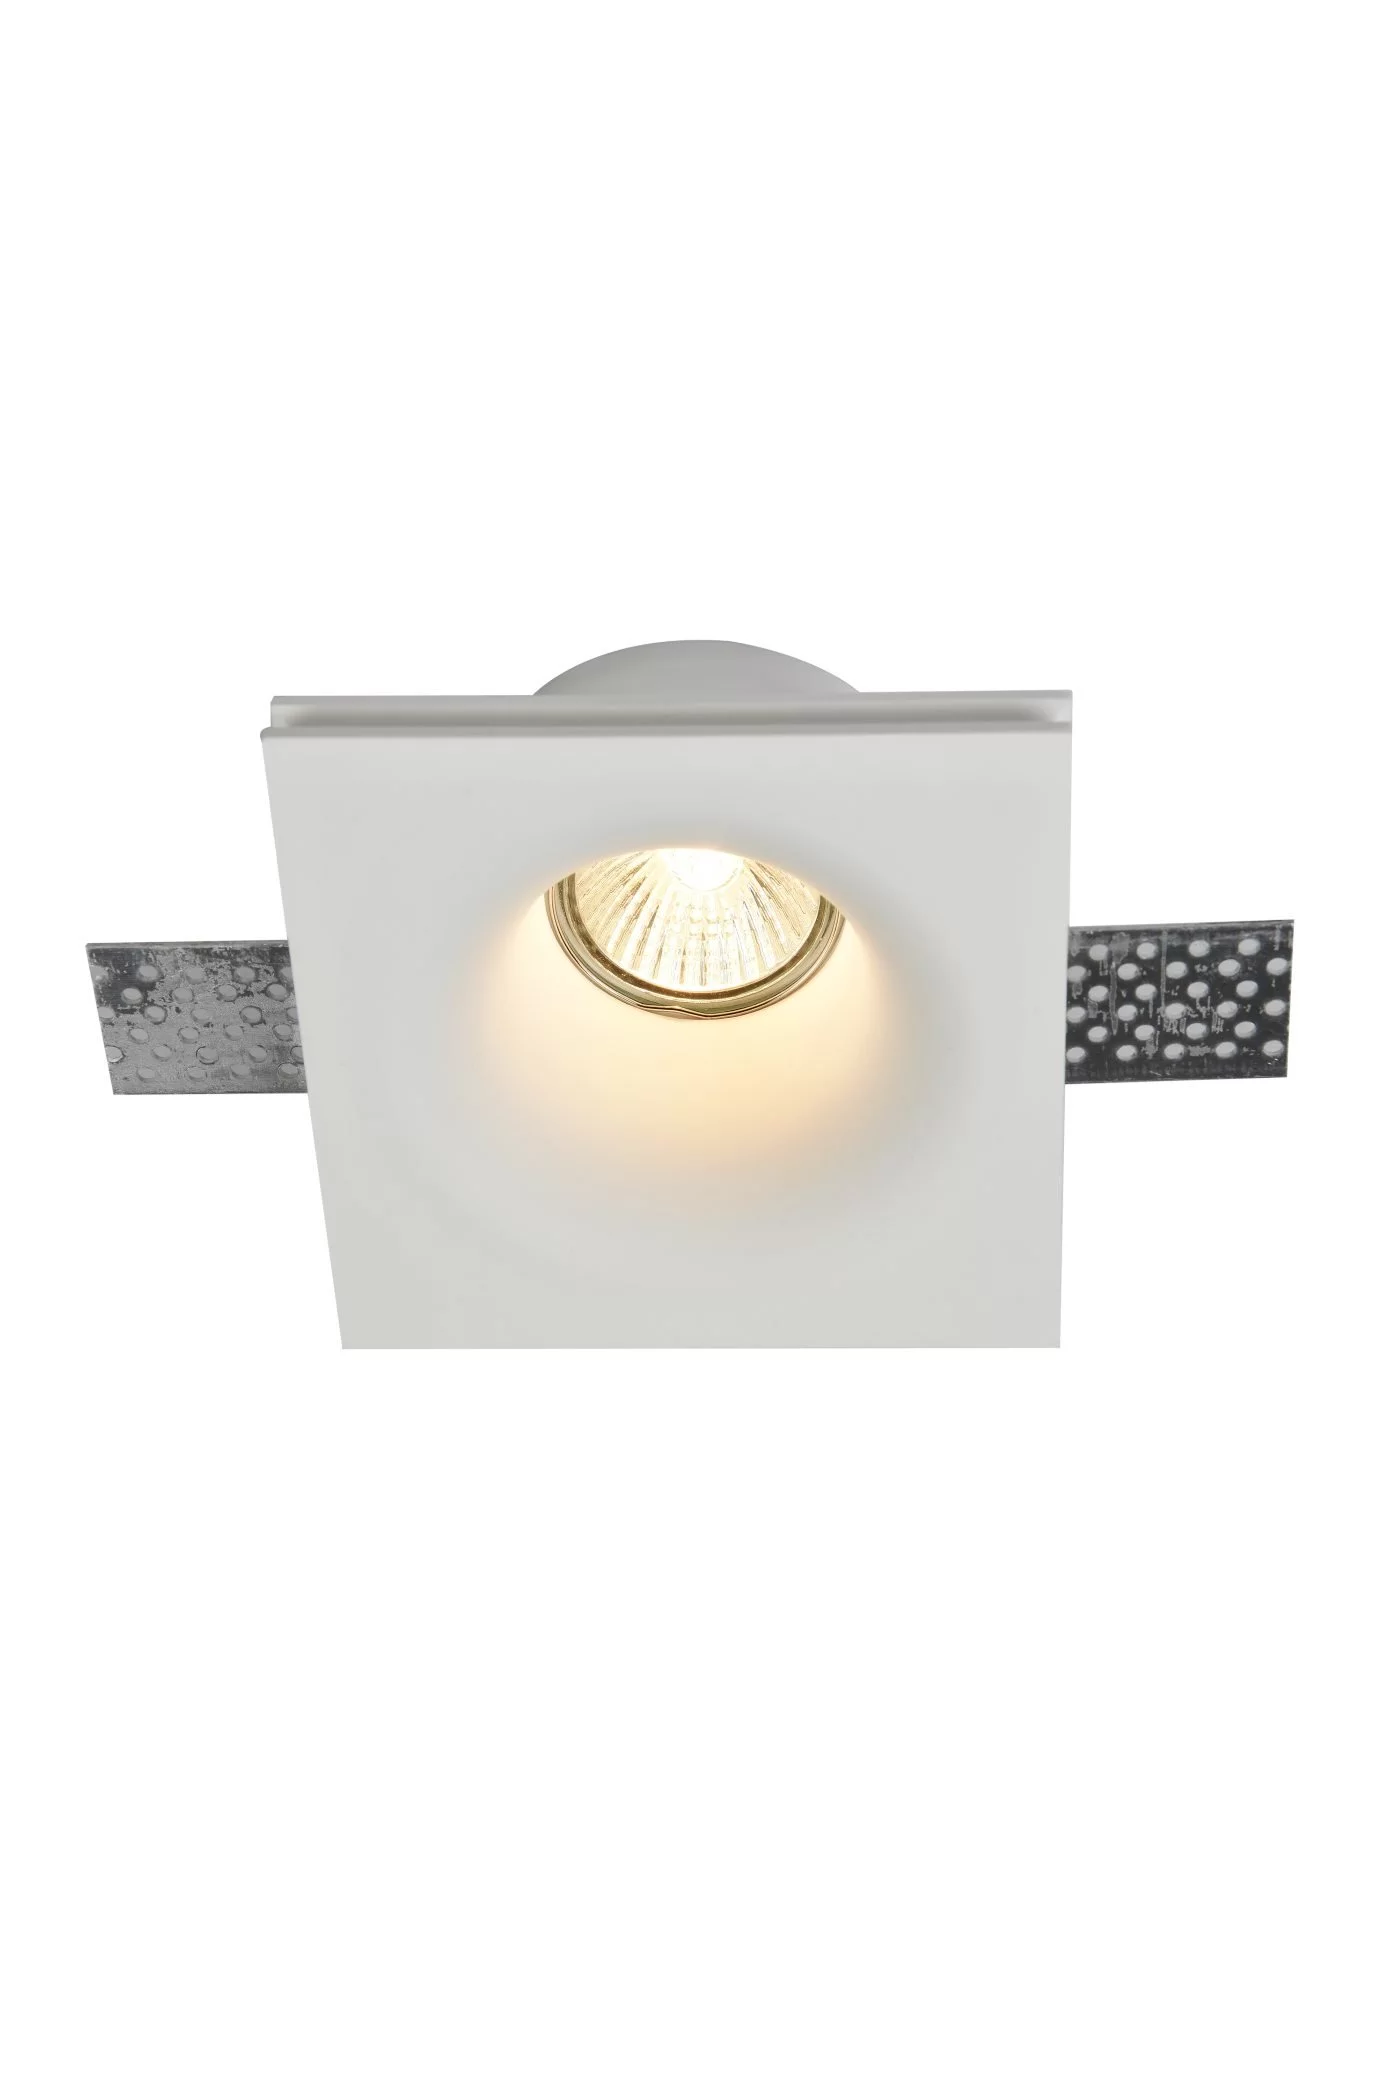   
                        Точечный светильник MAYTONI  (Германия) 14241    
                         в стиле Модерн.  
                        Тип источника света: светодиодная лампа, сменная.                         Форма: Квадрат.                                                                          фото 1